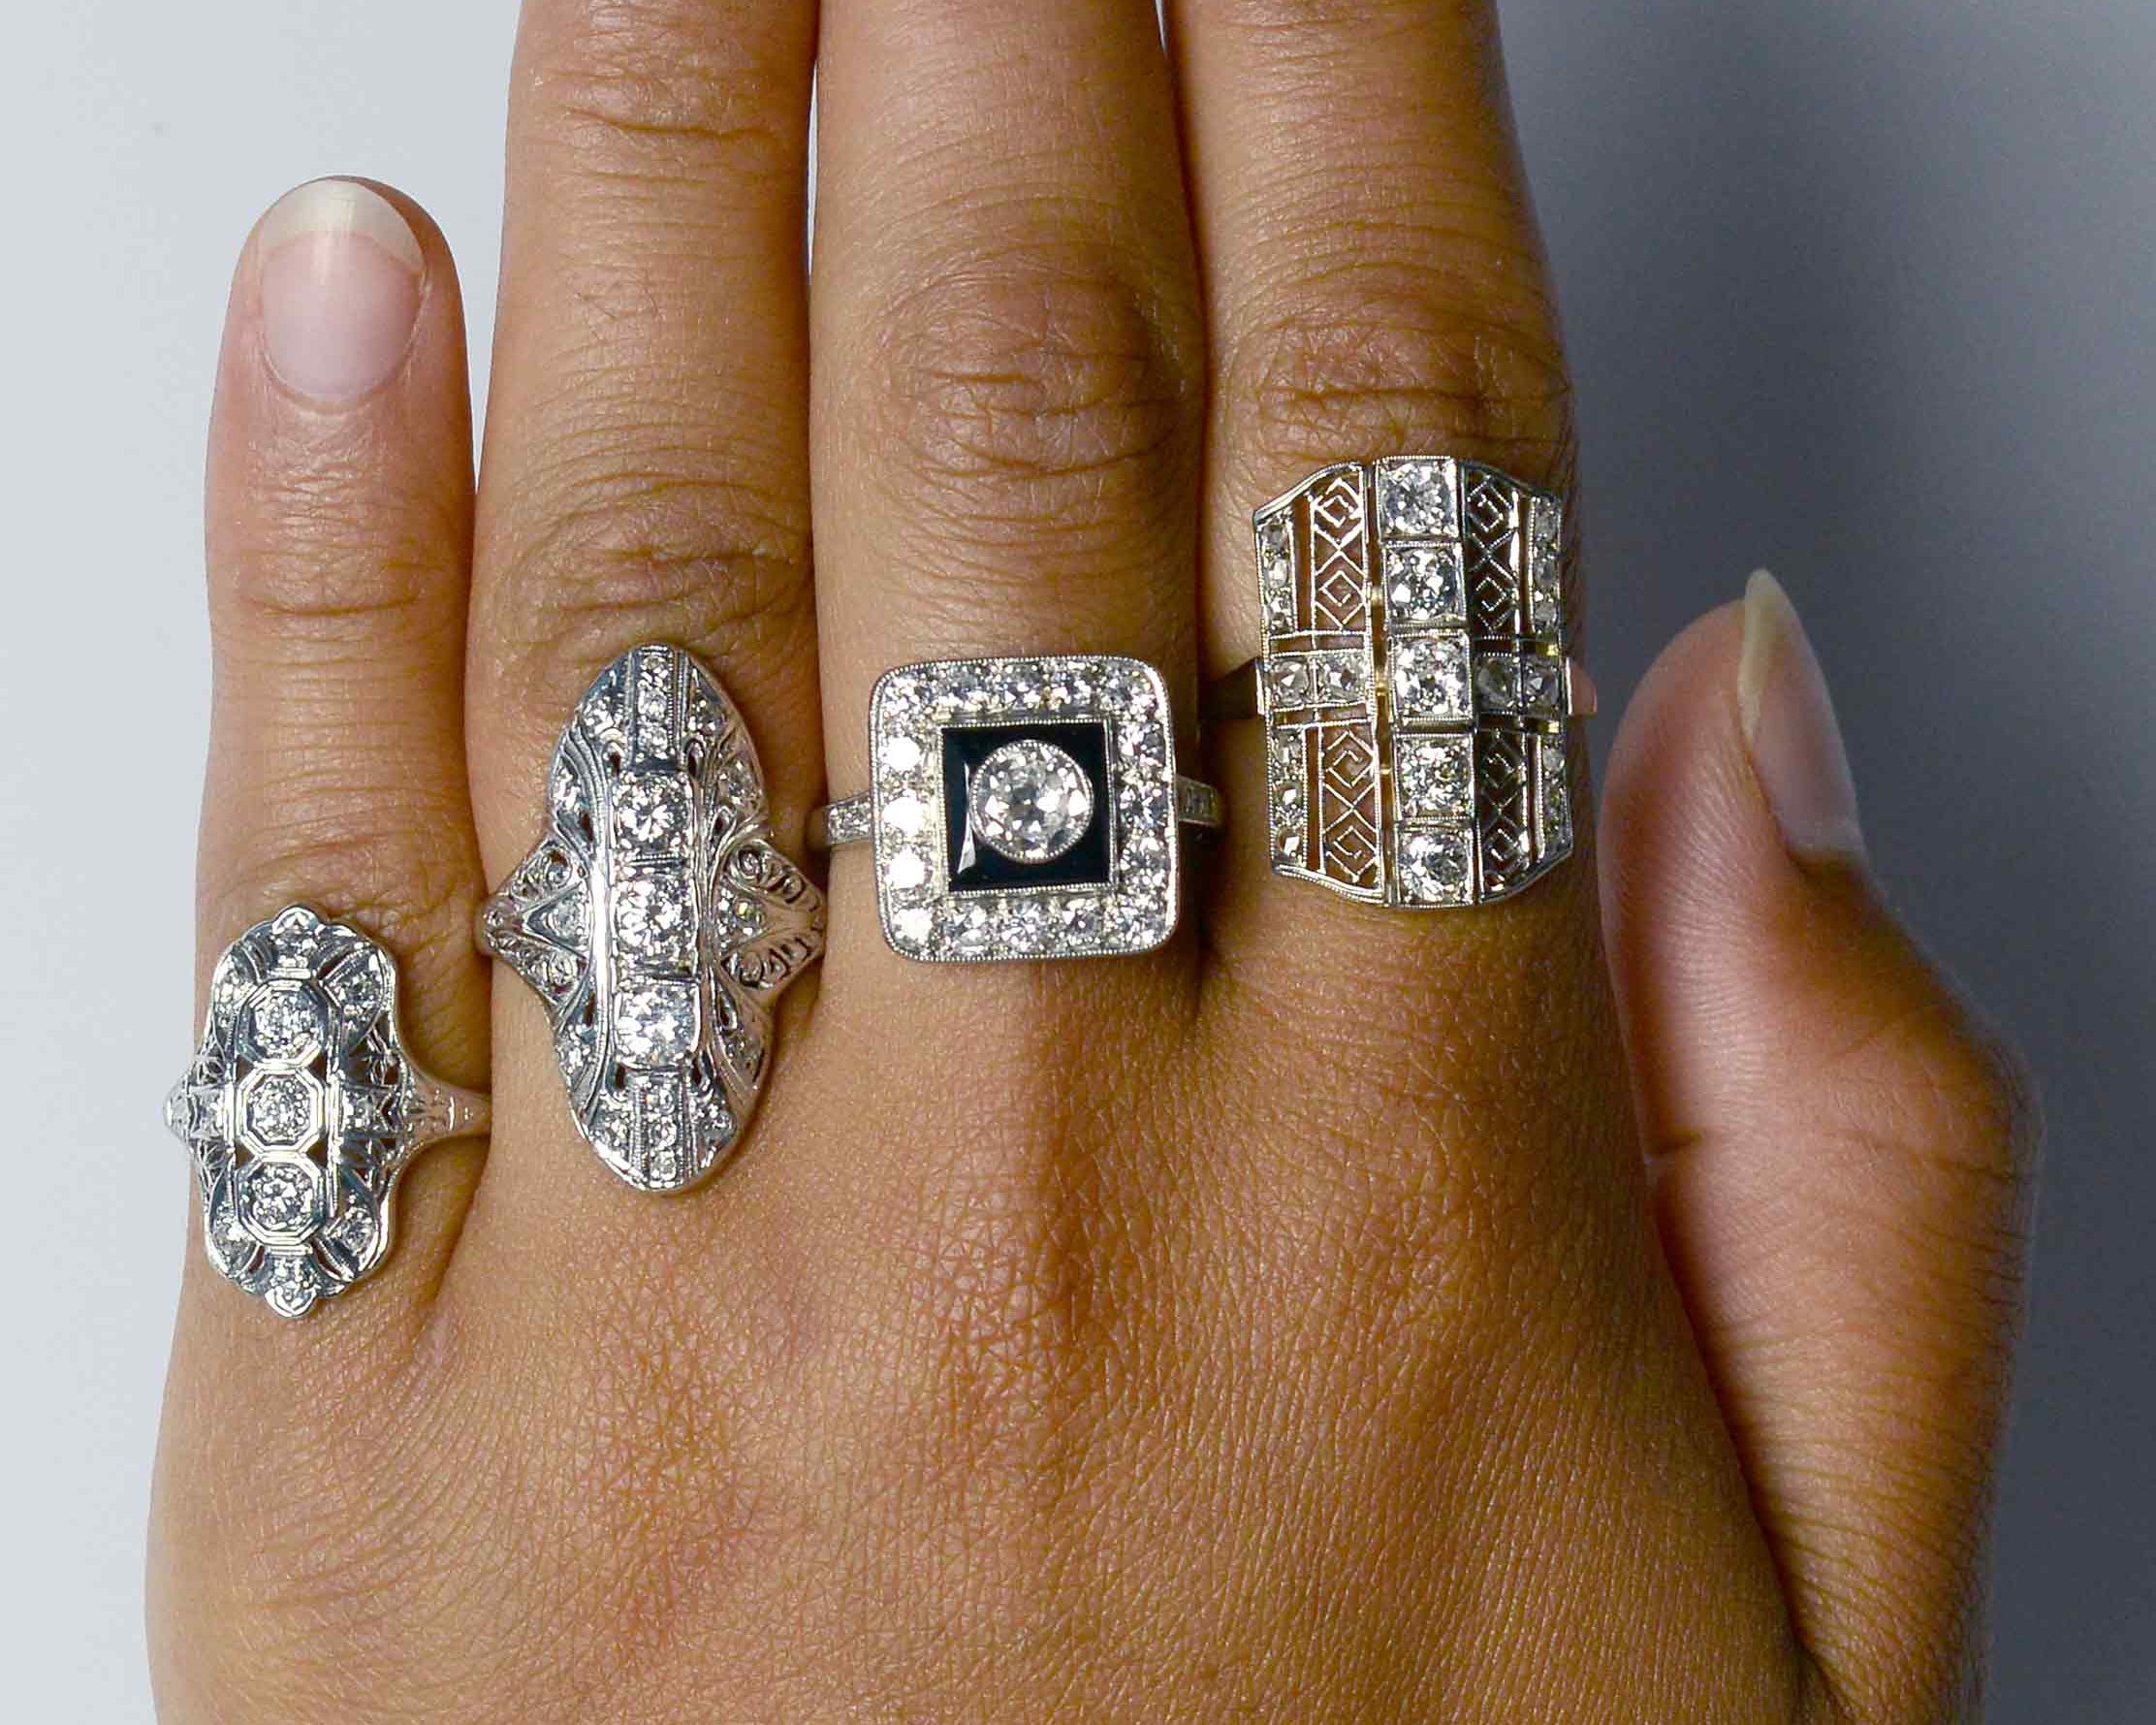 Big diamond shield rings.